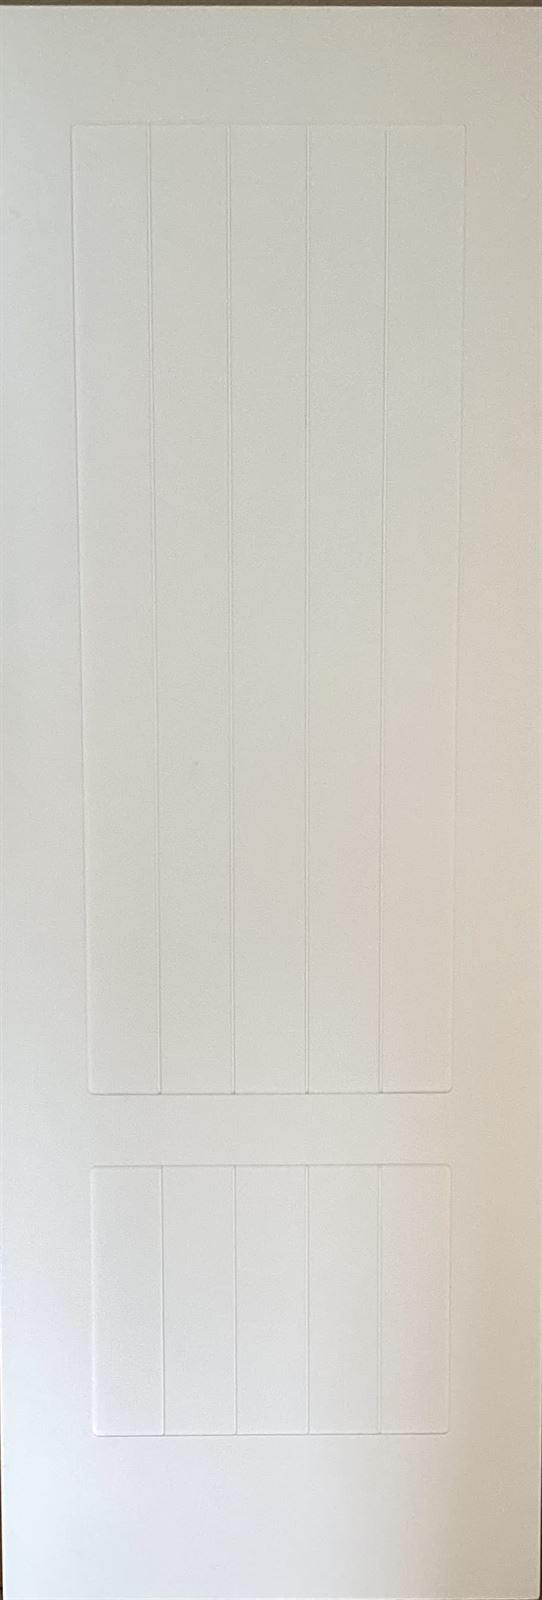 Puerta lacada blanca modelo 7 - Imagen 1